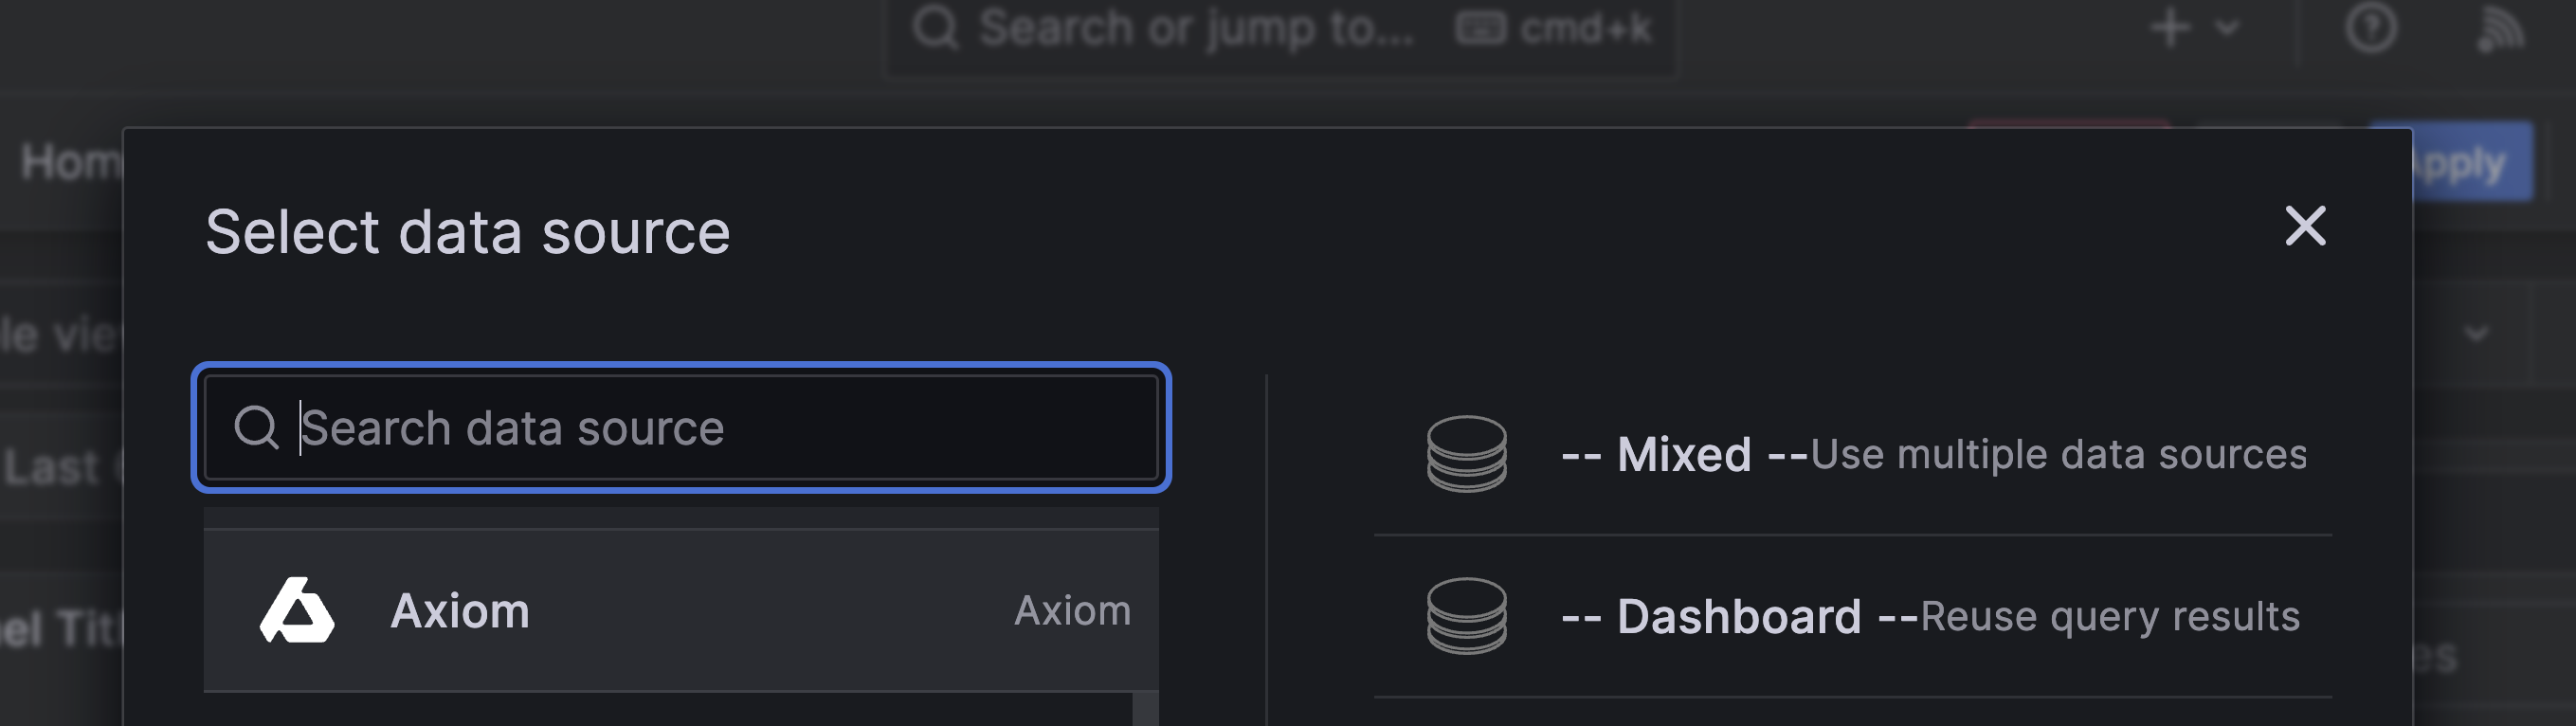 Axiom Data source